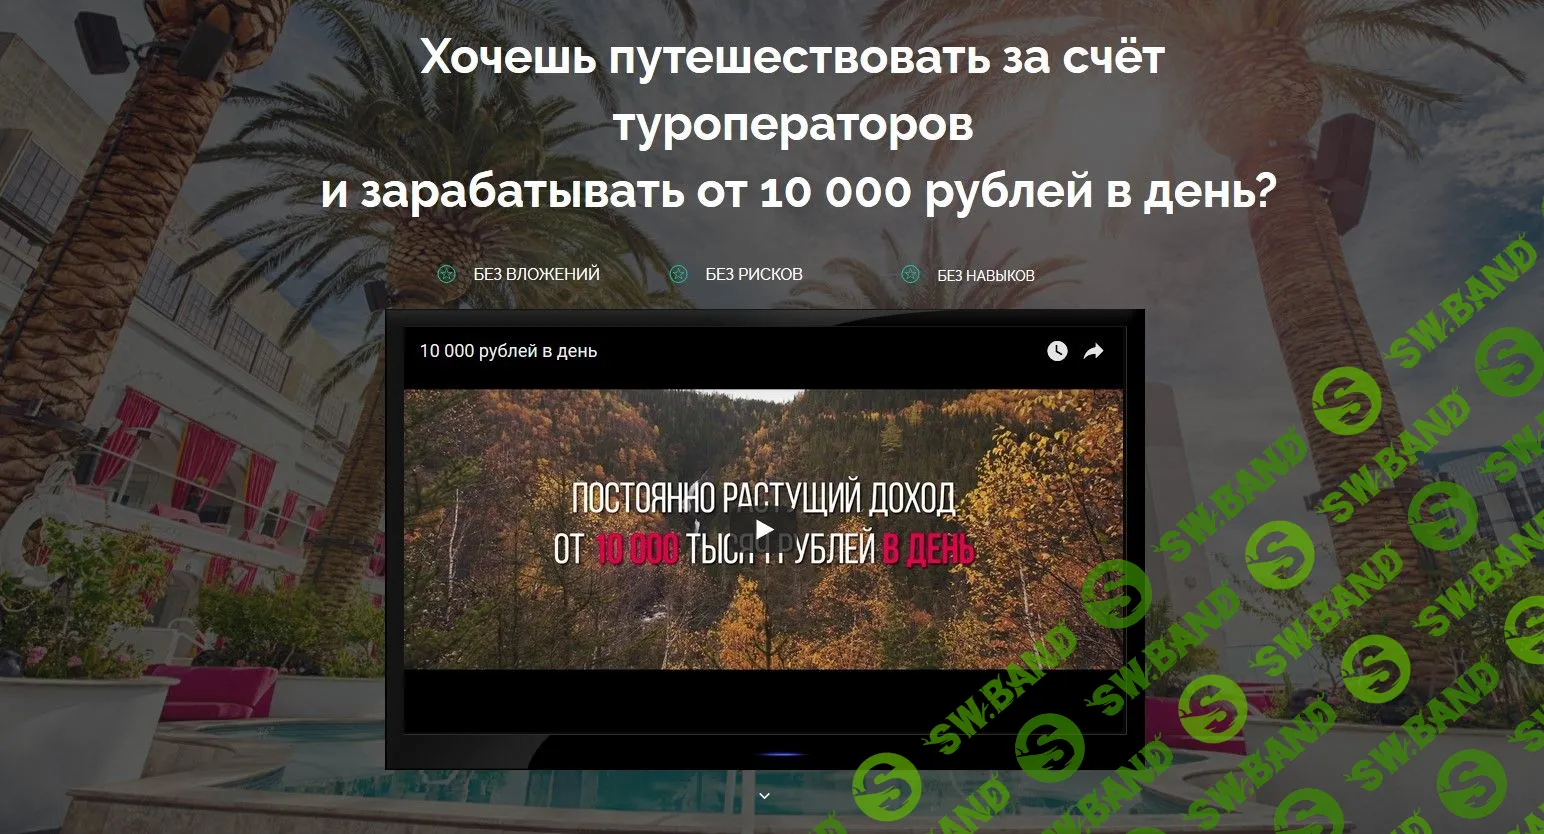 [Евгений Шкуратов] Путешествуй и зарабатывай от 10 000 рублей в день